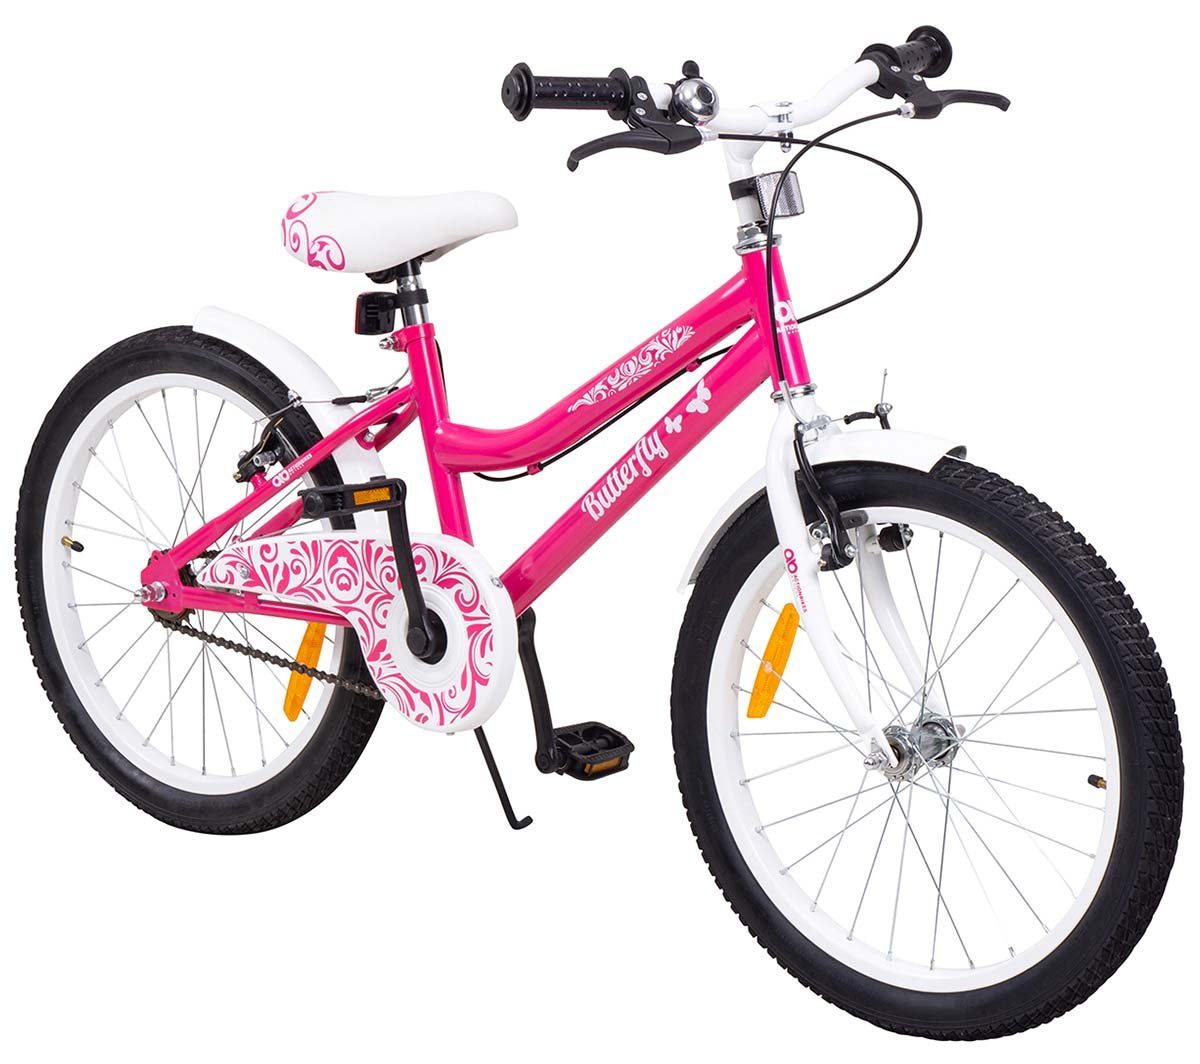 20 20" Zoll Kinderfahrrad Cityfahrrad Mädchenfahrrad Kinder Kinder City Rad Bike 